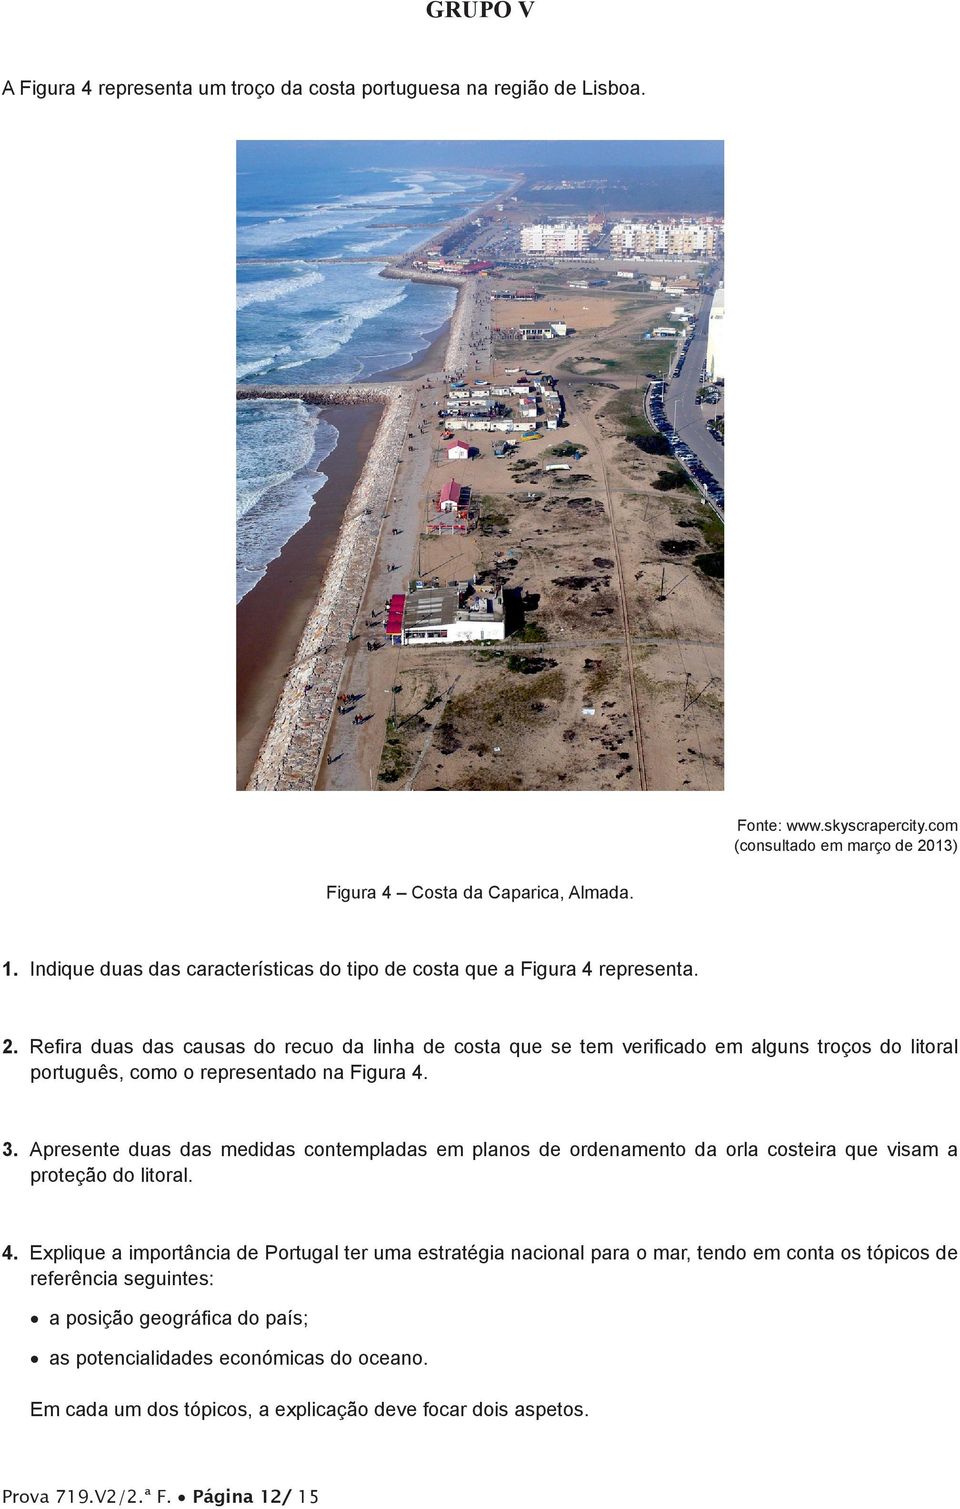 Refira duas das causas do recuo da linha de costa que se tem verificado em alguns troços do litoral português, como o representado na Figura 4. 3.